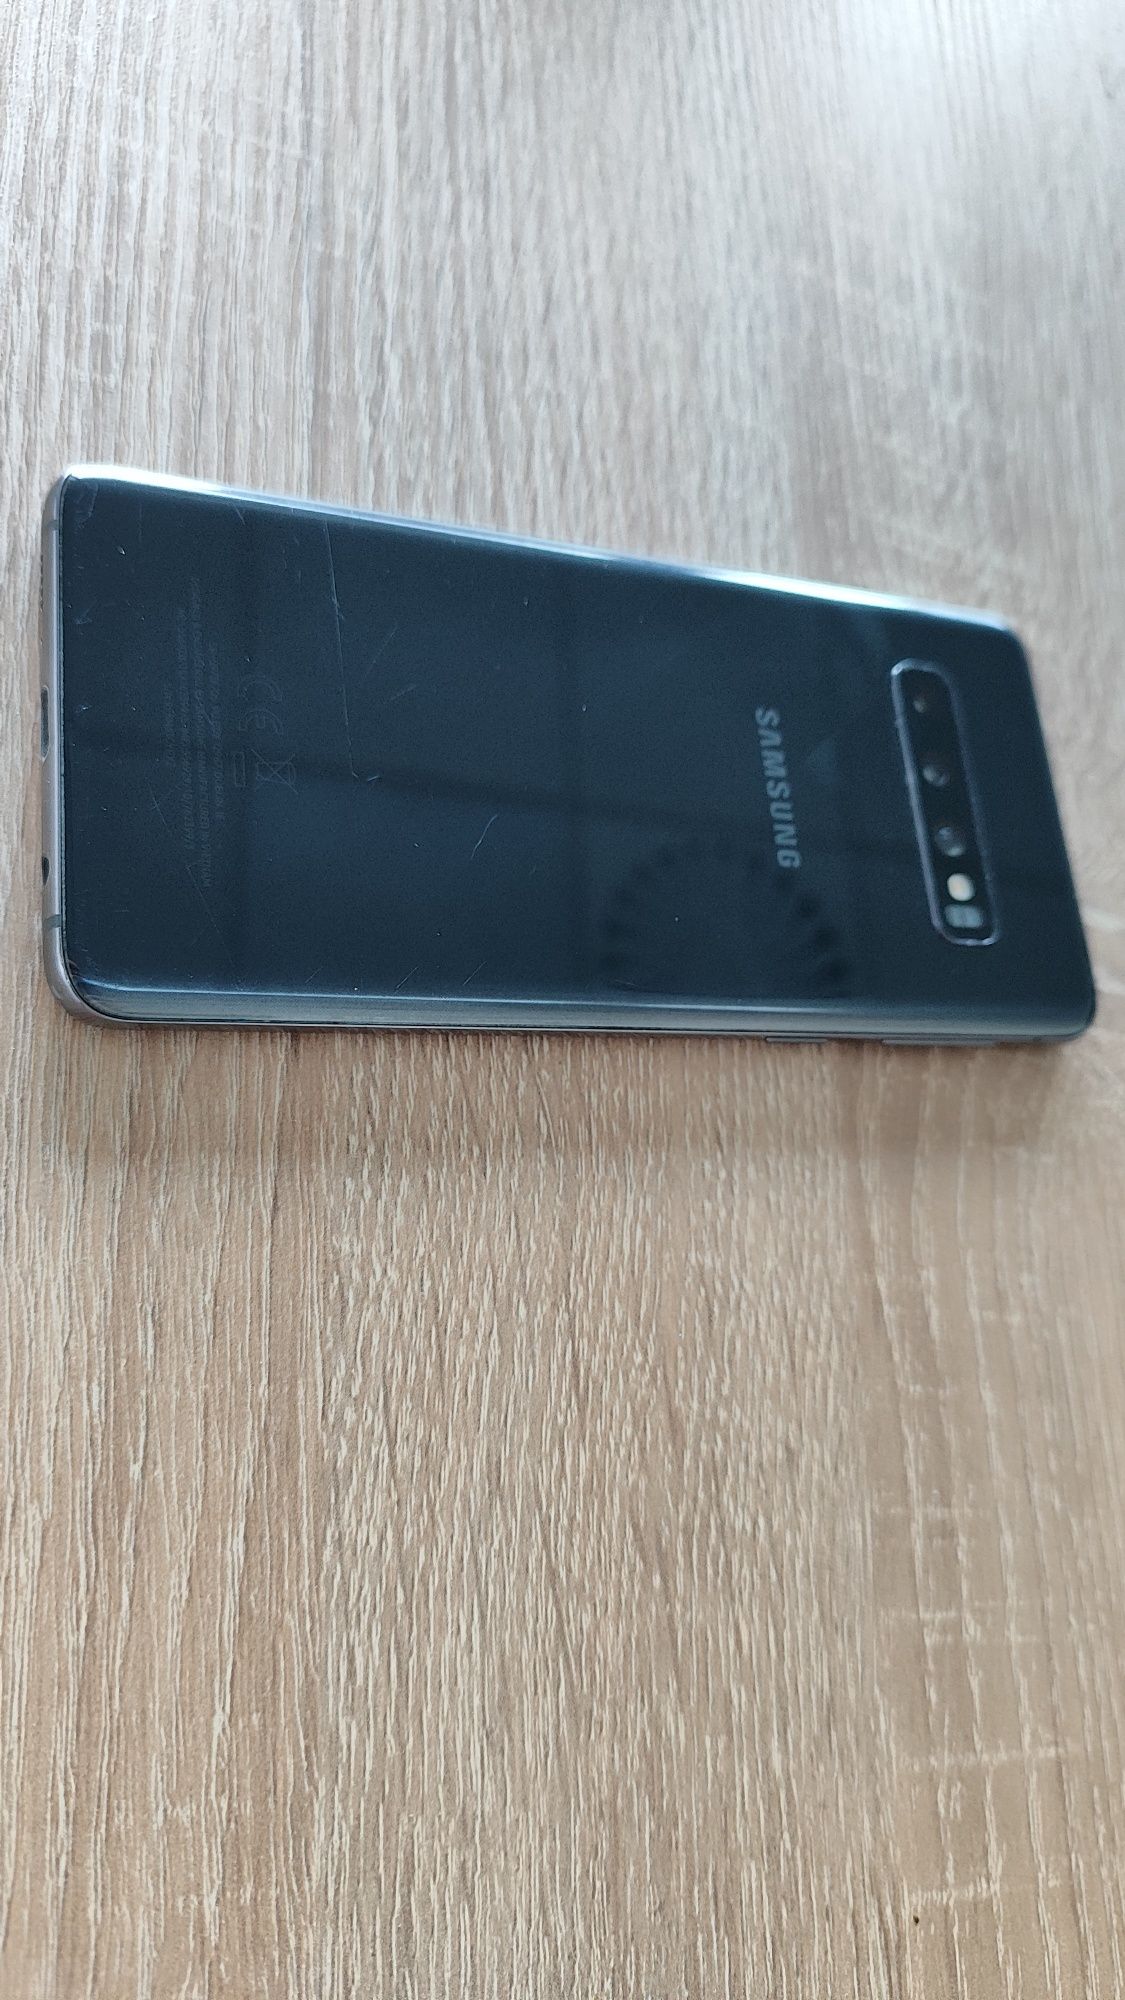 Samsung Galaxy  S10